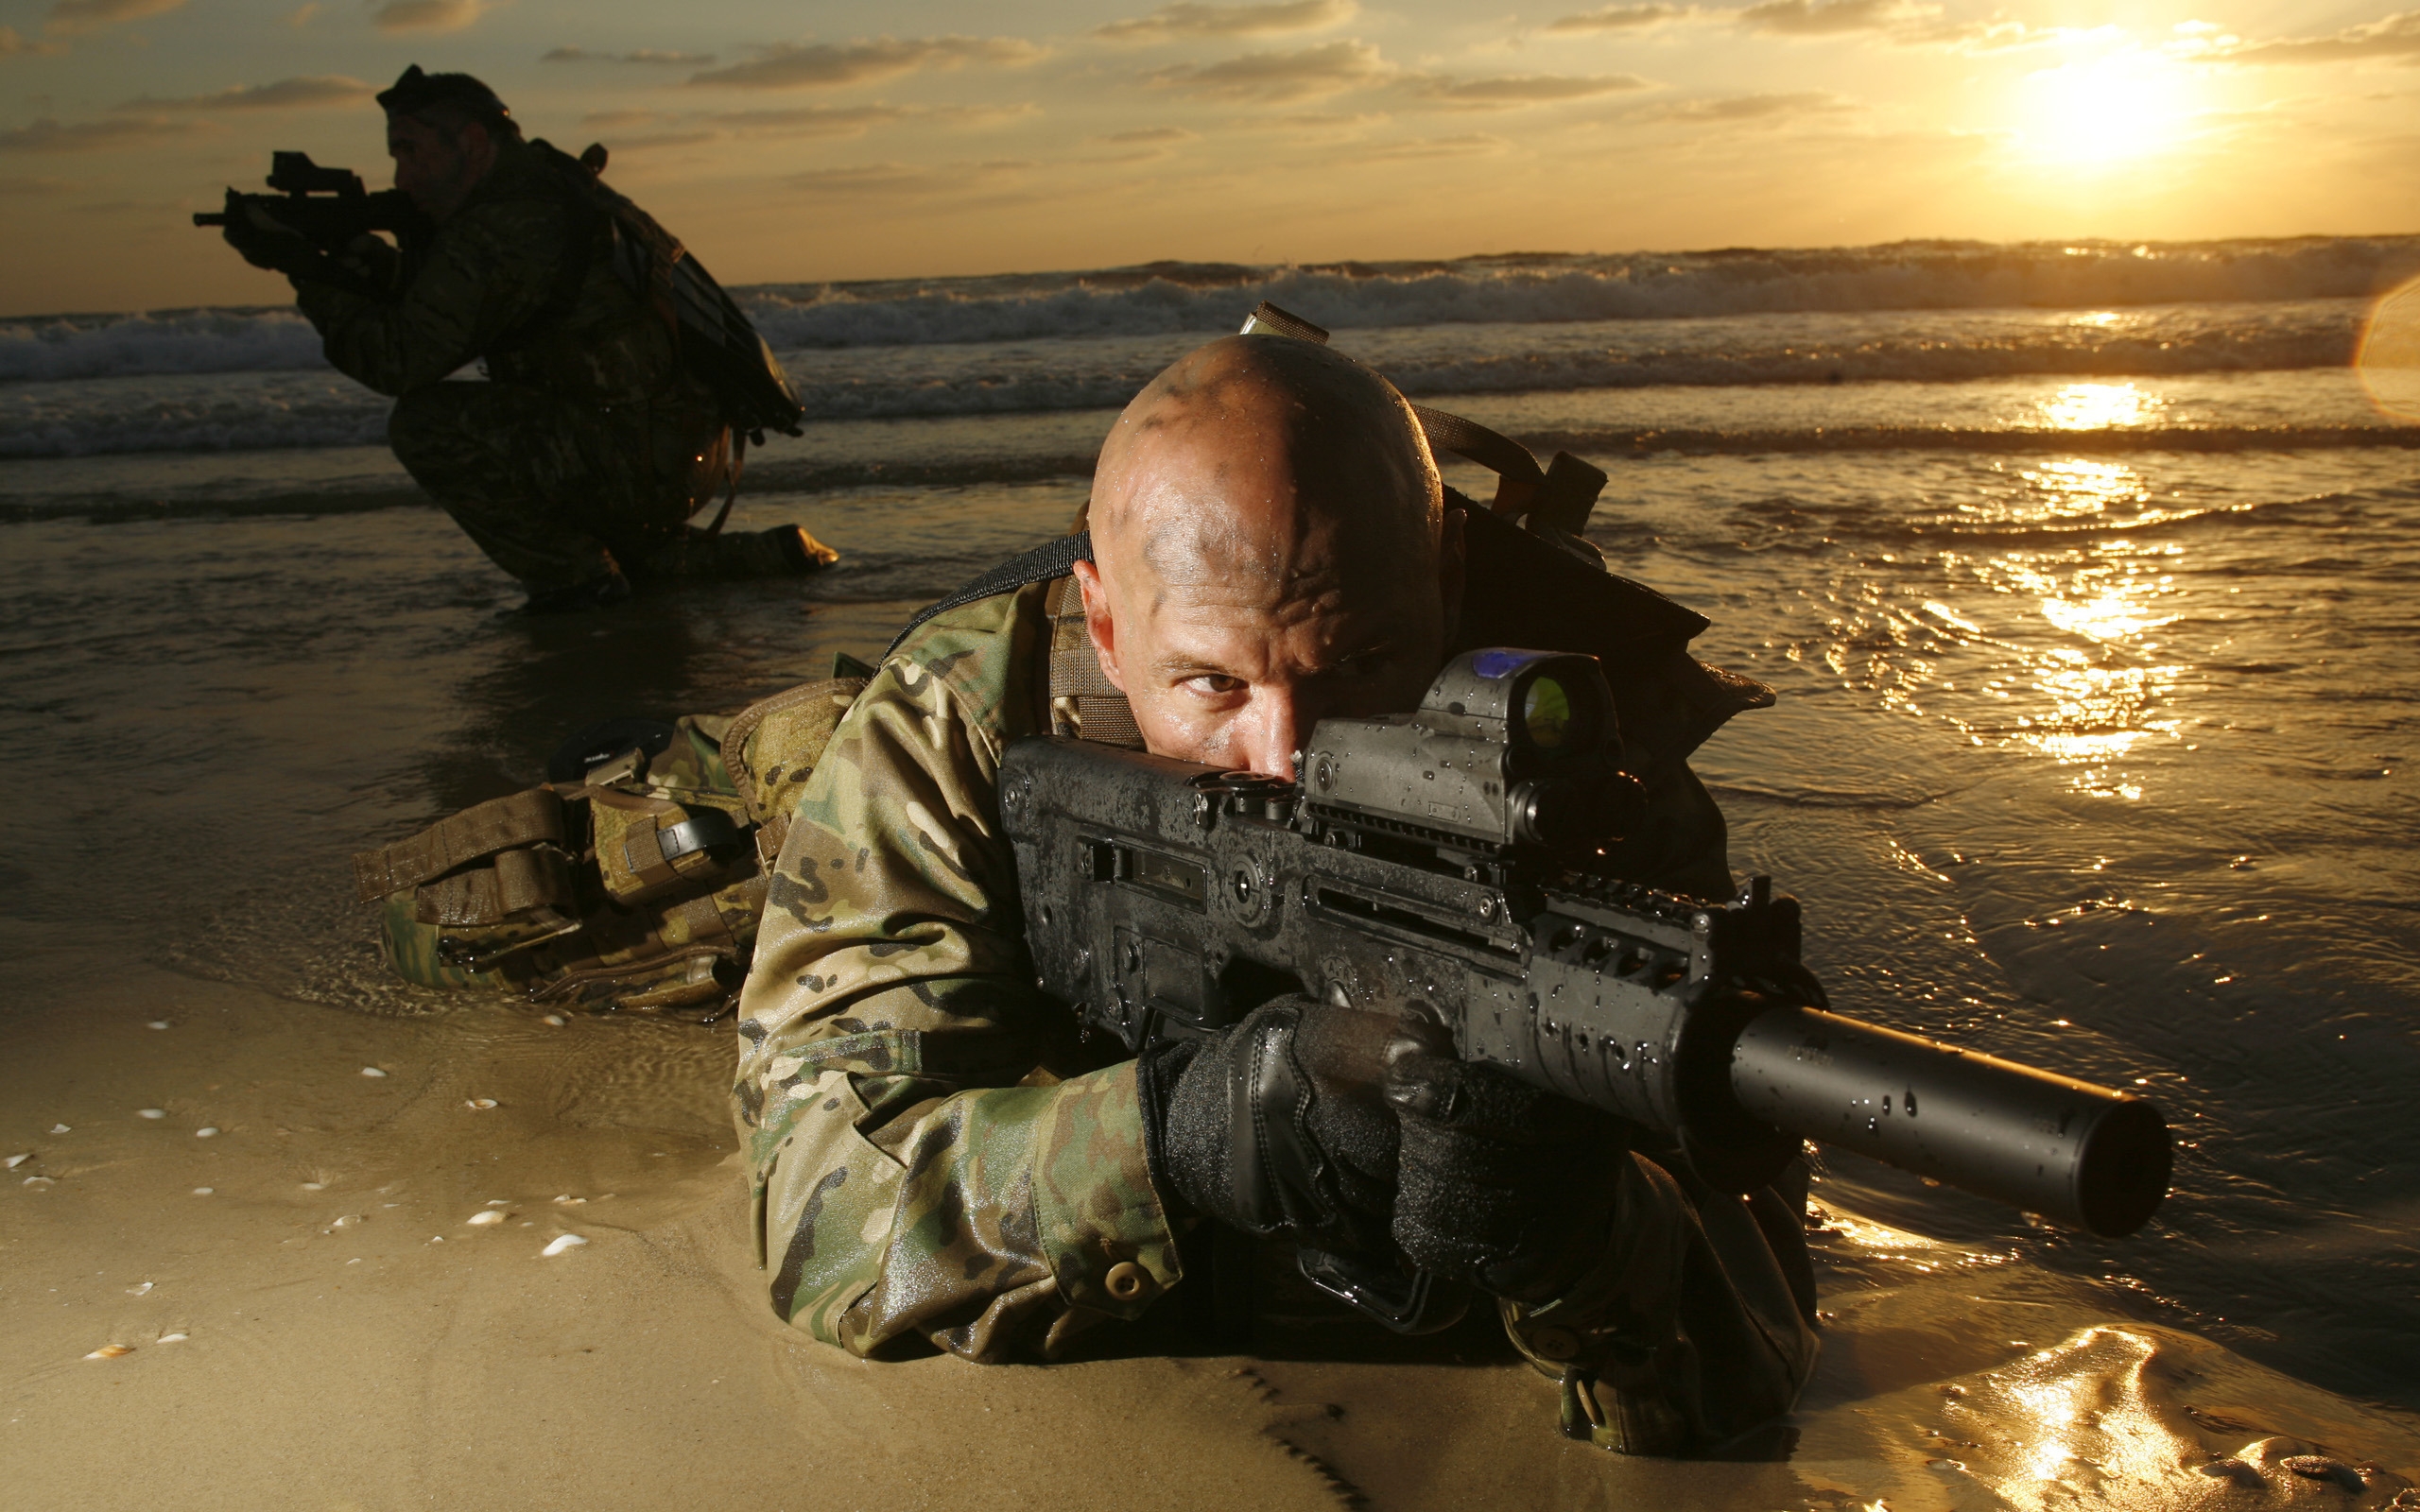 Sniper War for 2560 x 1600 widescreen resolution